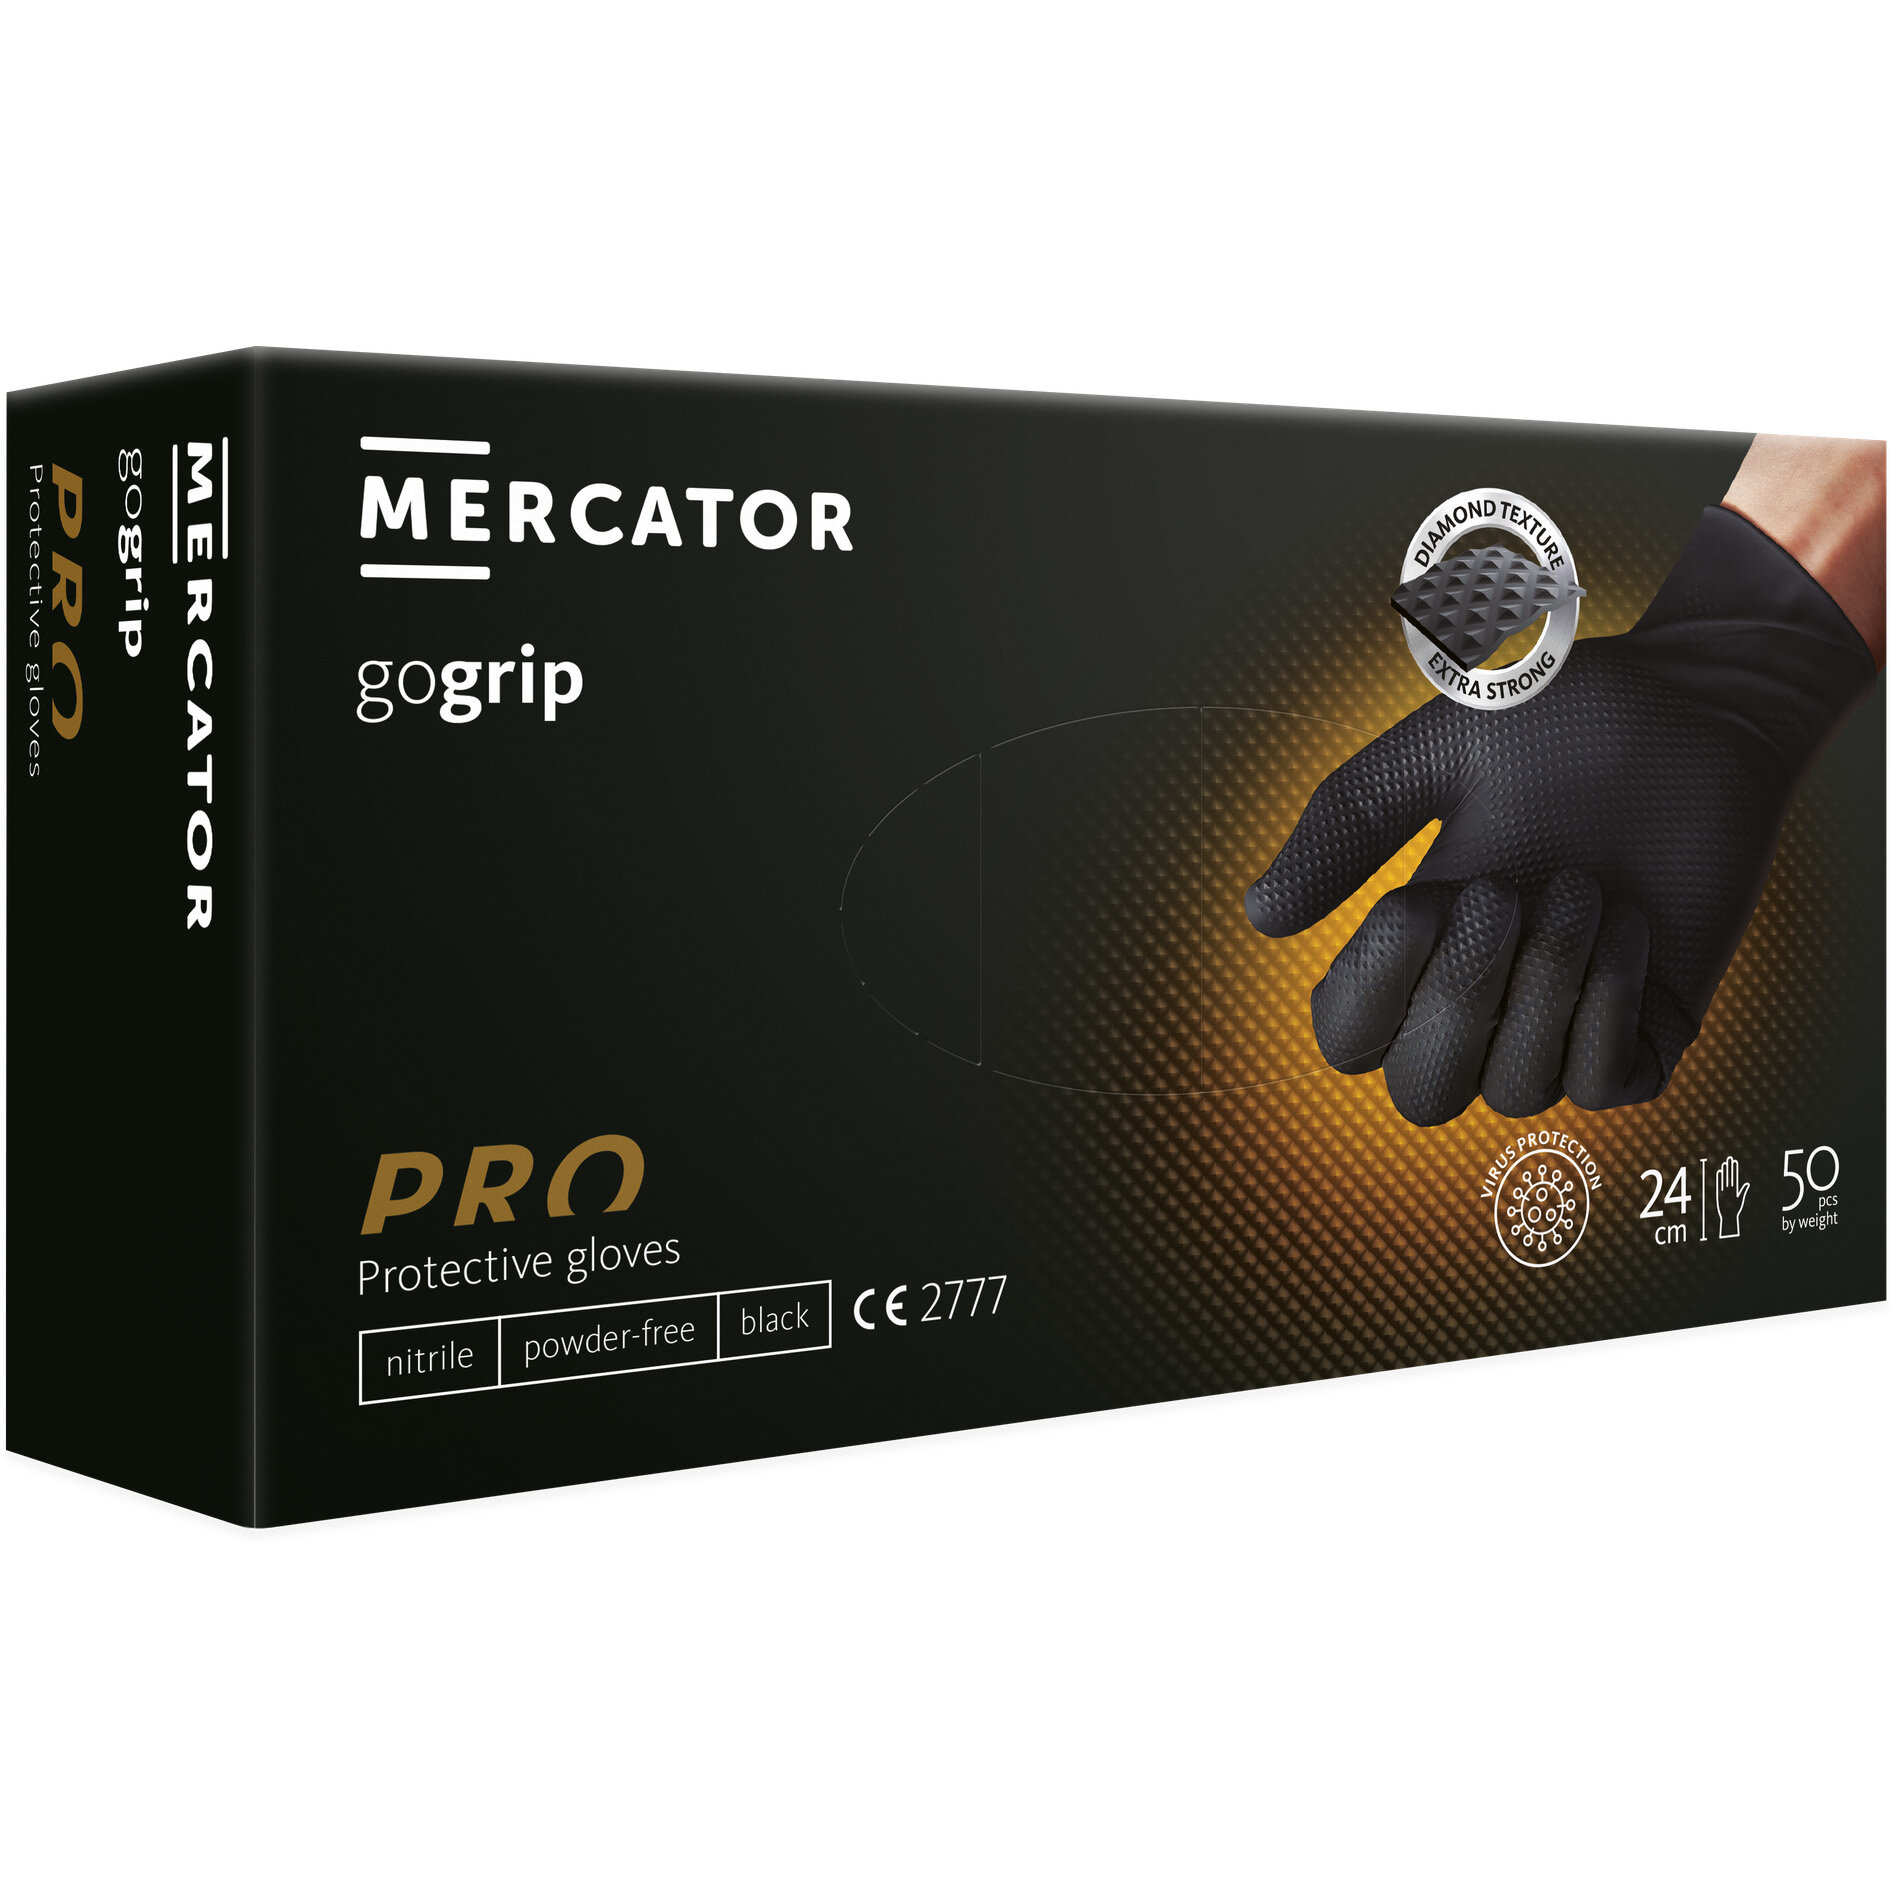 Mercator GoGrip noir XS gants nitrile texturés non poudrés - 50pcs